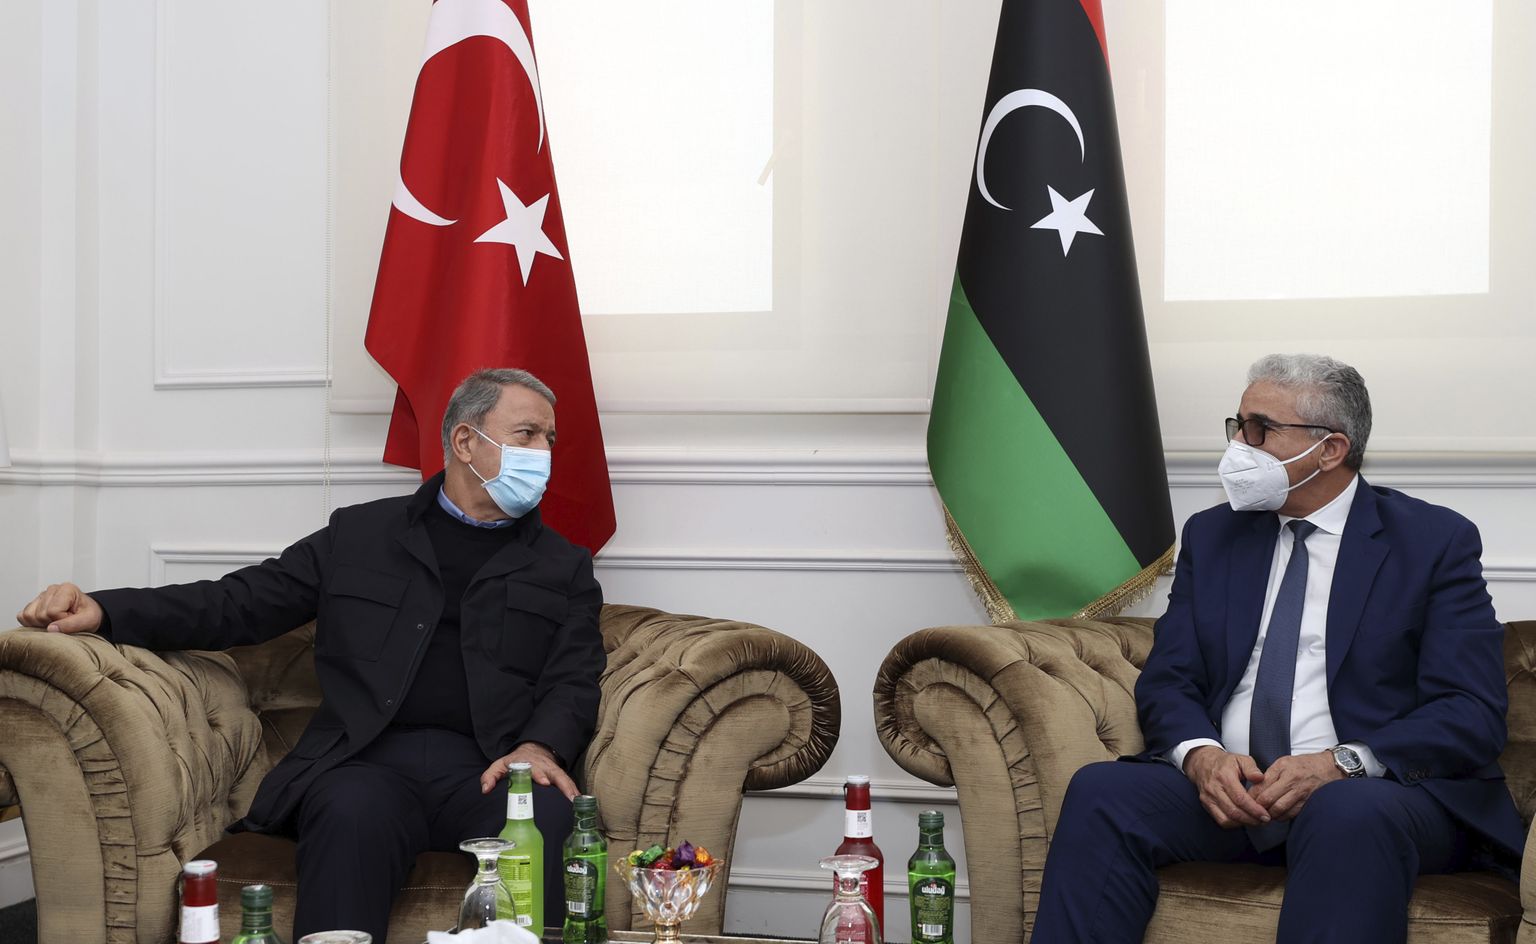 Türgi kaitseminister Hulusi Akar (vasakul) ja Liibüa rahvusliku leppimise valitsuse kõrgema riiginõukogu esimees Khalid al-Mishri (paremal) Tripolis kõnelusi pidamas.